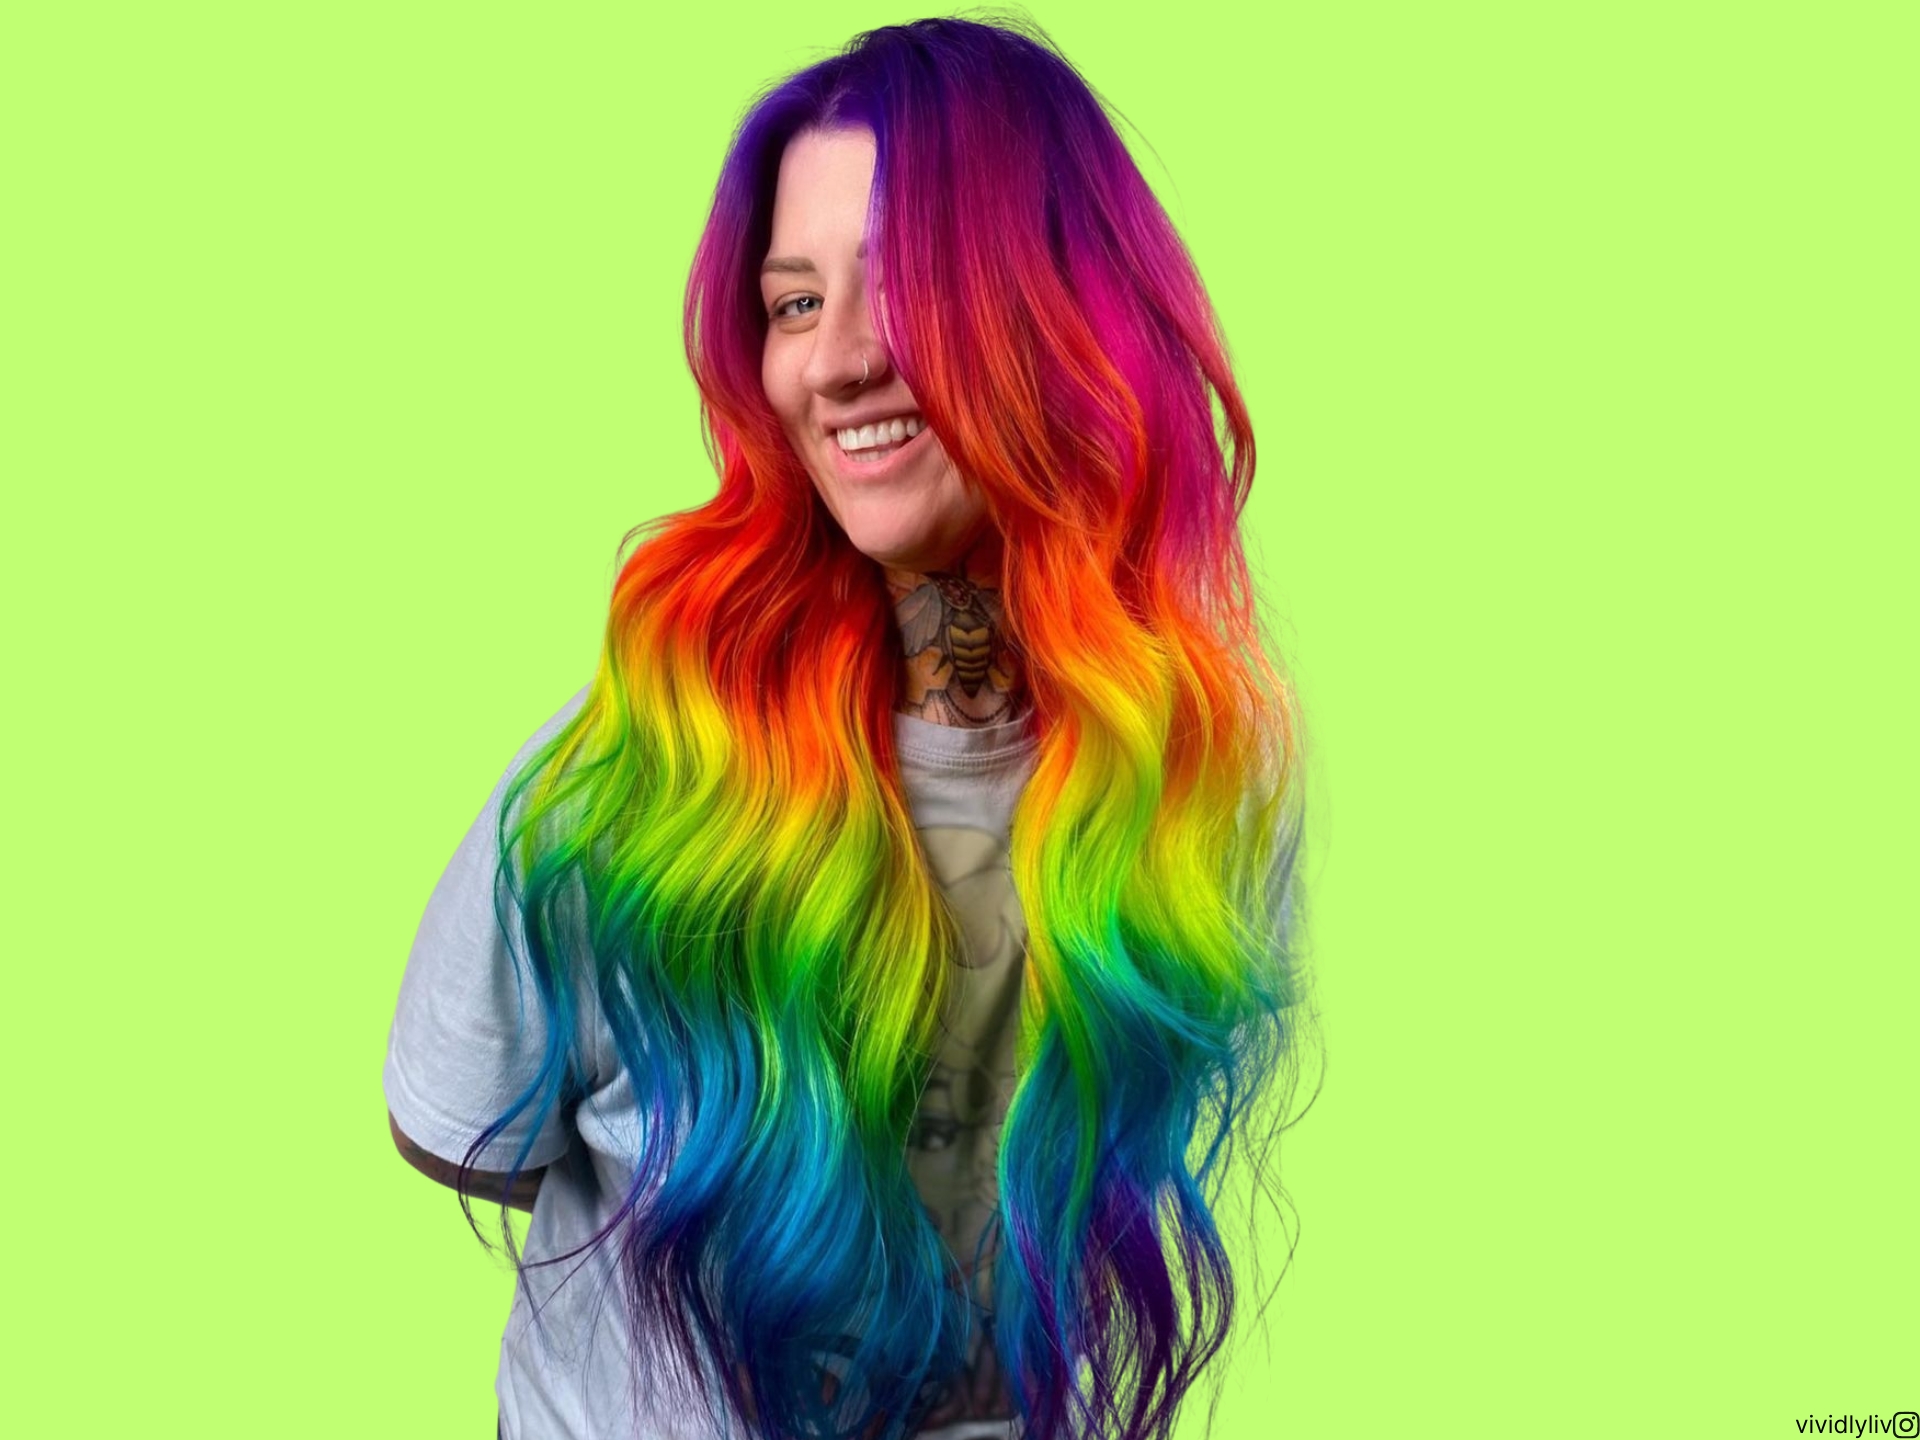 I capelli arcobaleno sono qui per aggiungere una vibrazione trendy e audace al vostro stile.